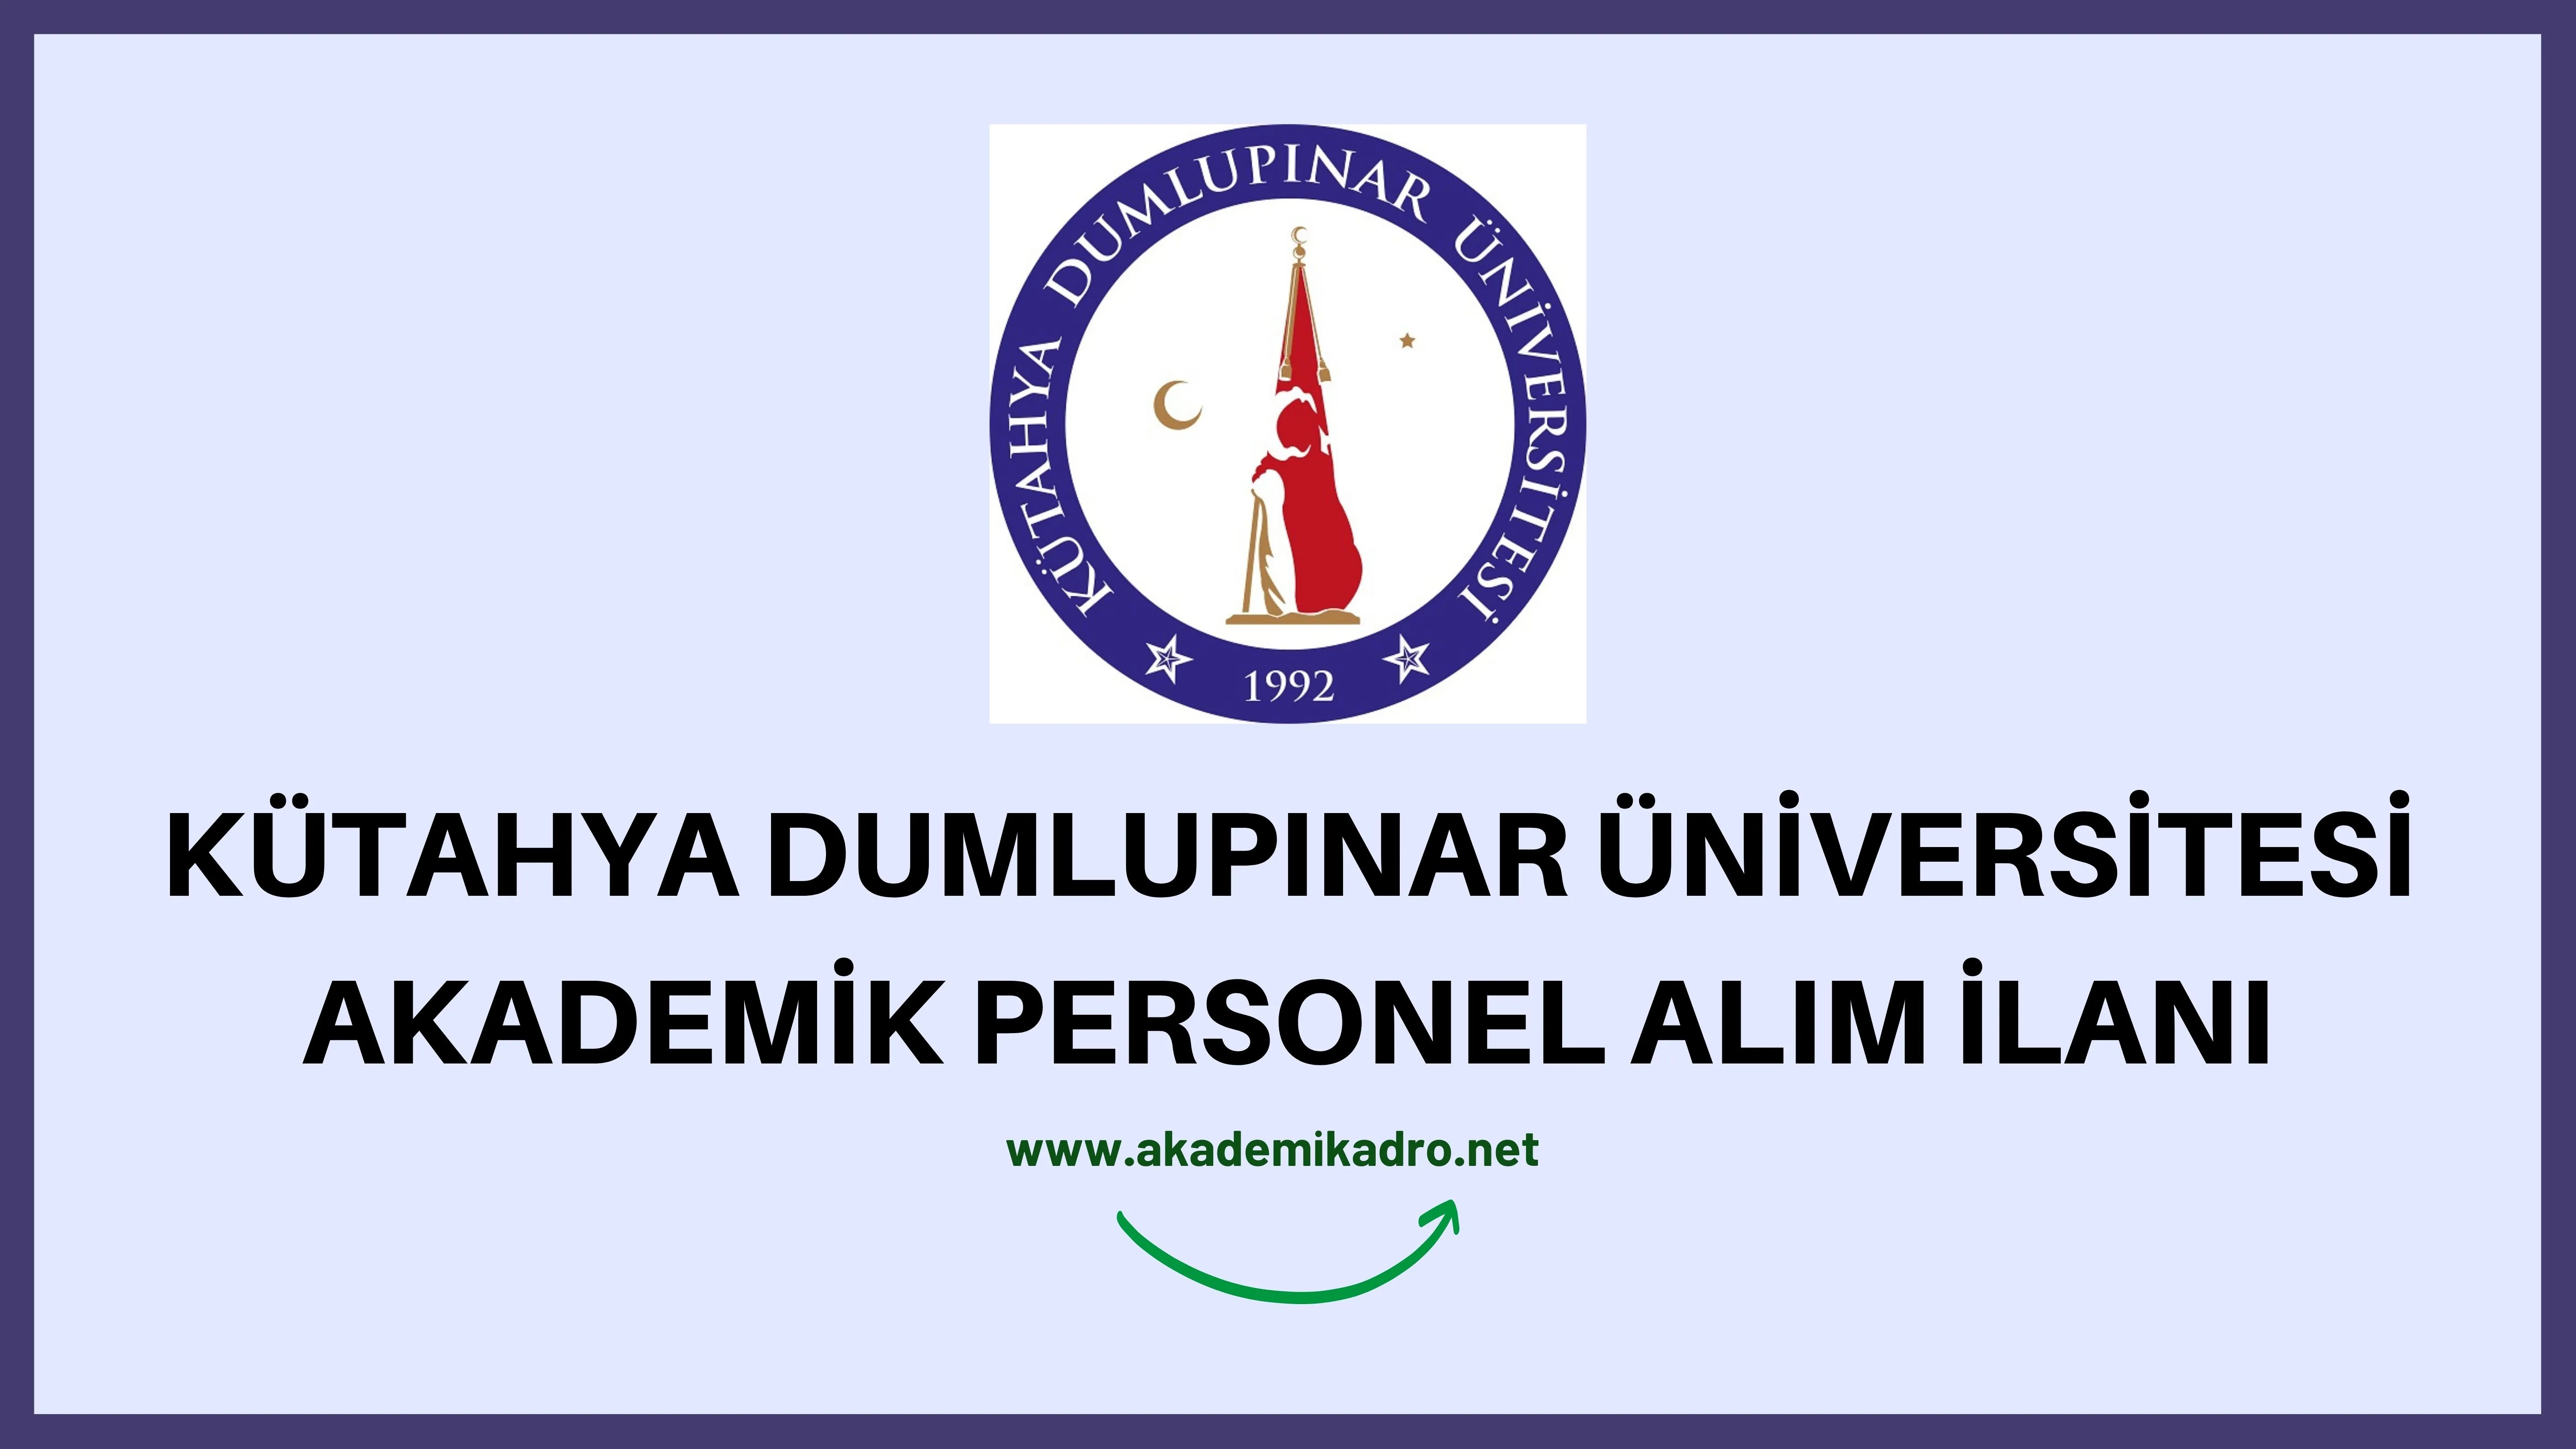 Kütahya Dumlupınar Üniversitesi 40 akademik personel alacak